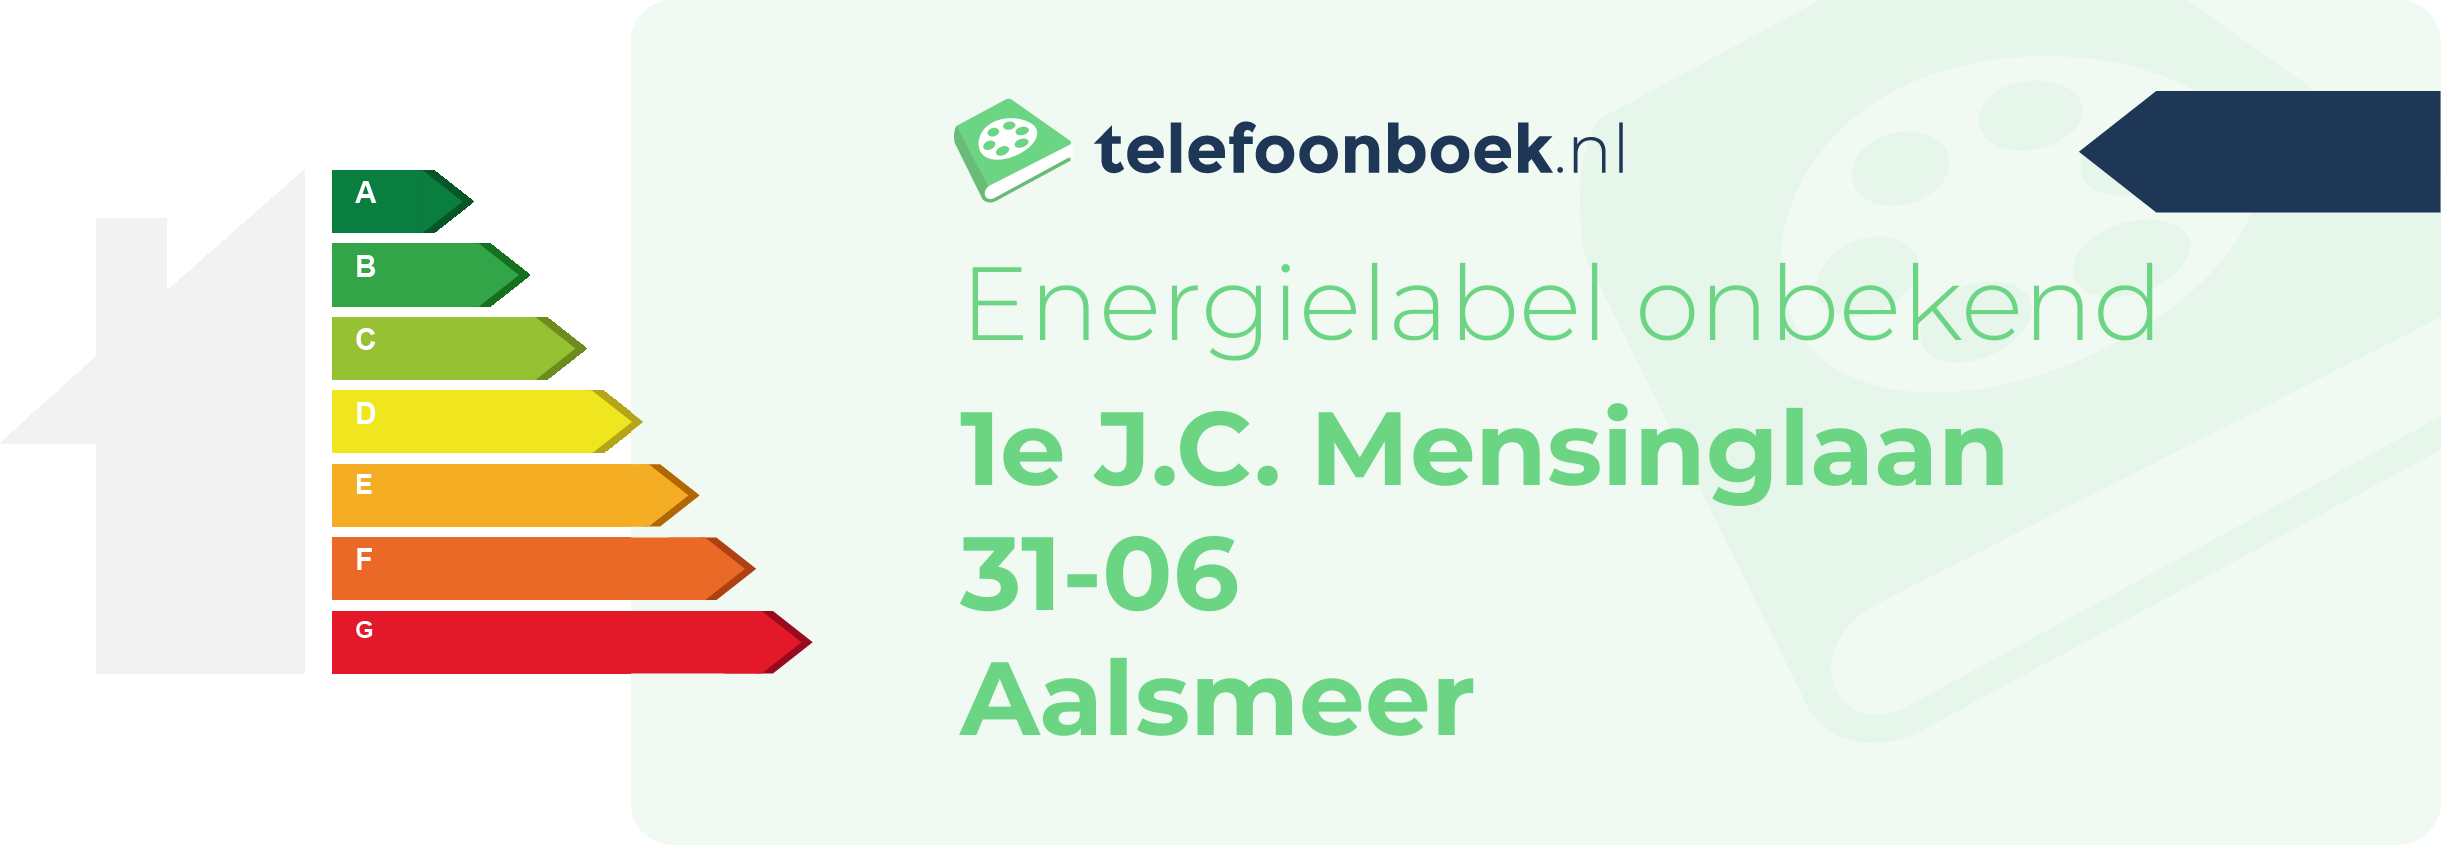 Energielabel 1e J.C. Mensinglaan 31-06 Aalsmeer